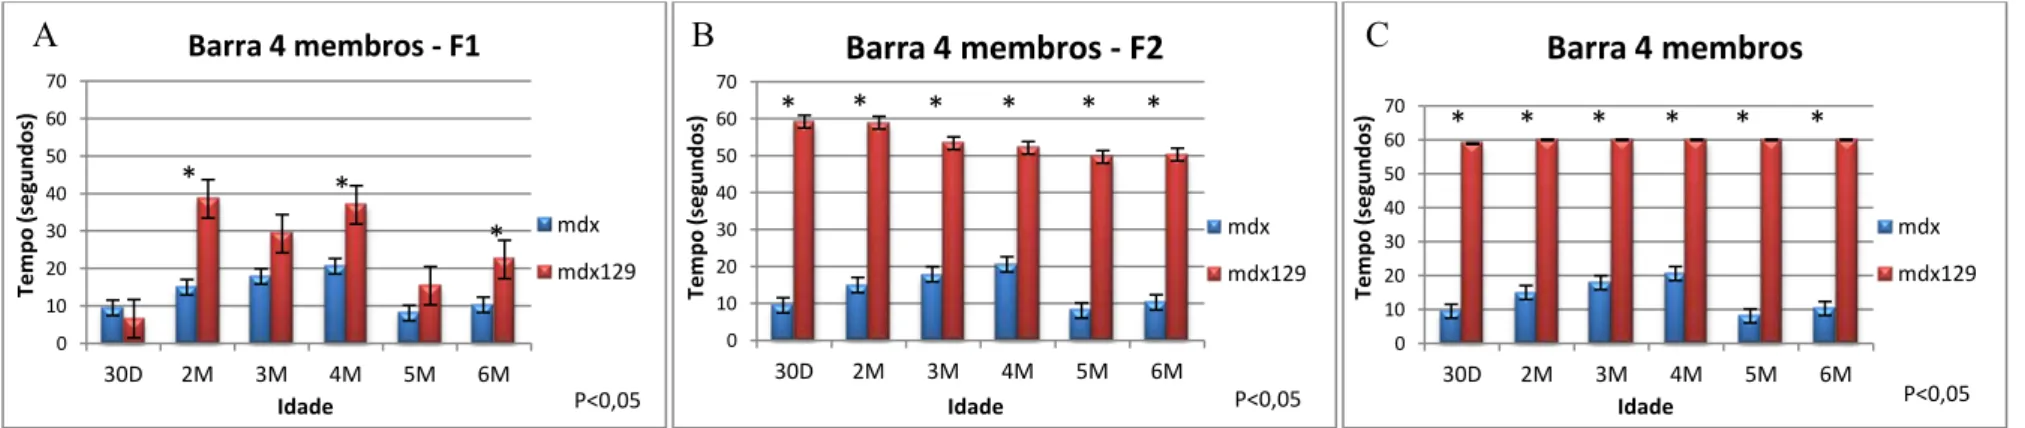 Gráfico 2. Gráficos dos testes de resistência em quatro membros das gerações F1, F2 e F3,  (A, B e C respectivamente), em relação aos animais mdx